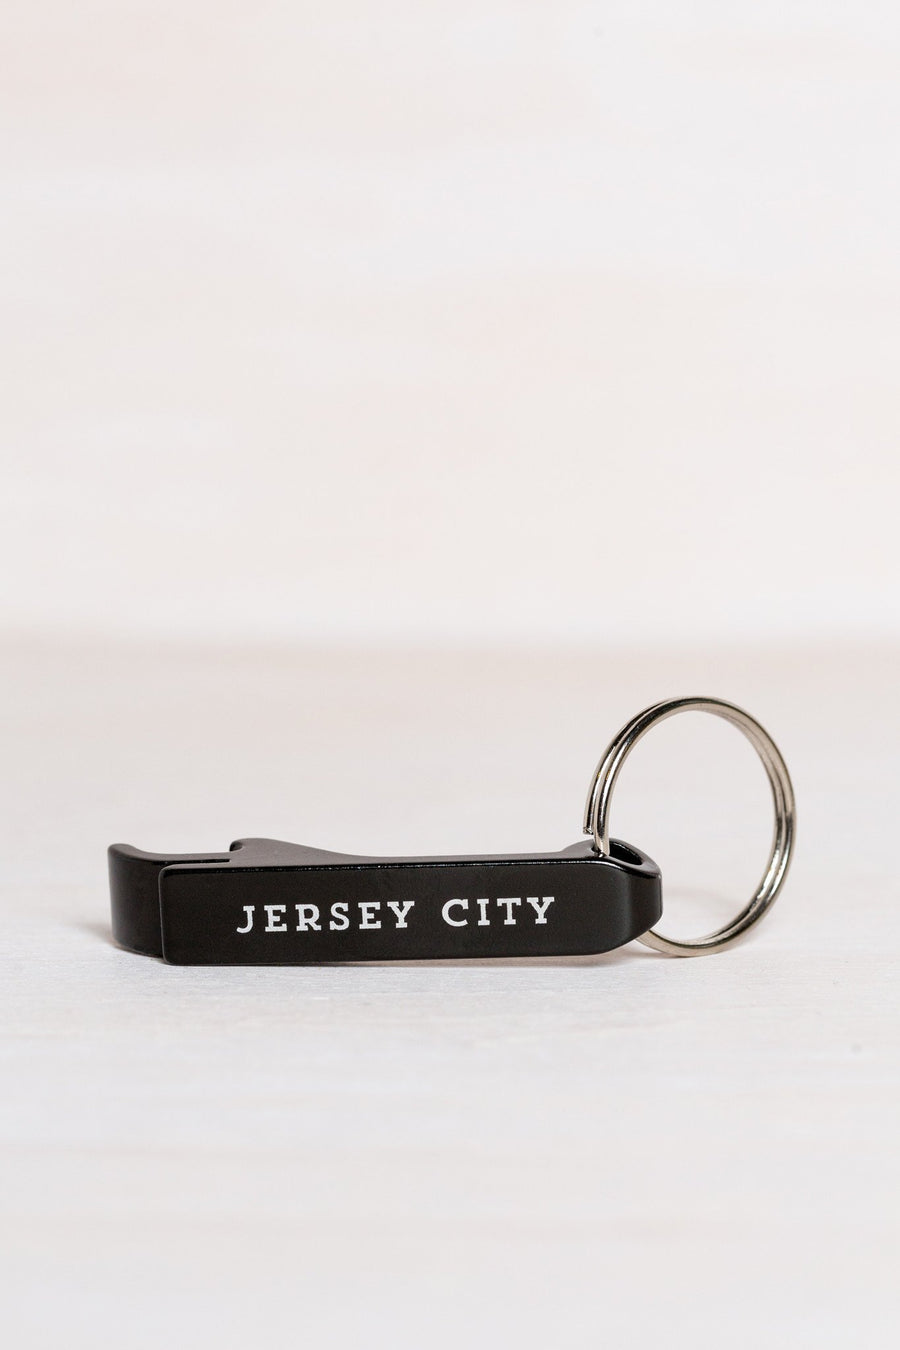 Jersey City Bottle Opener + Key Chain